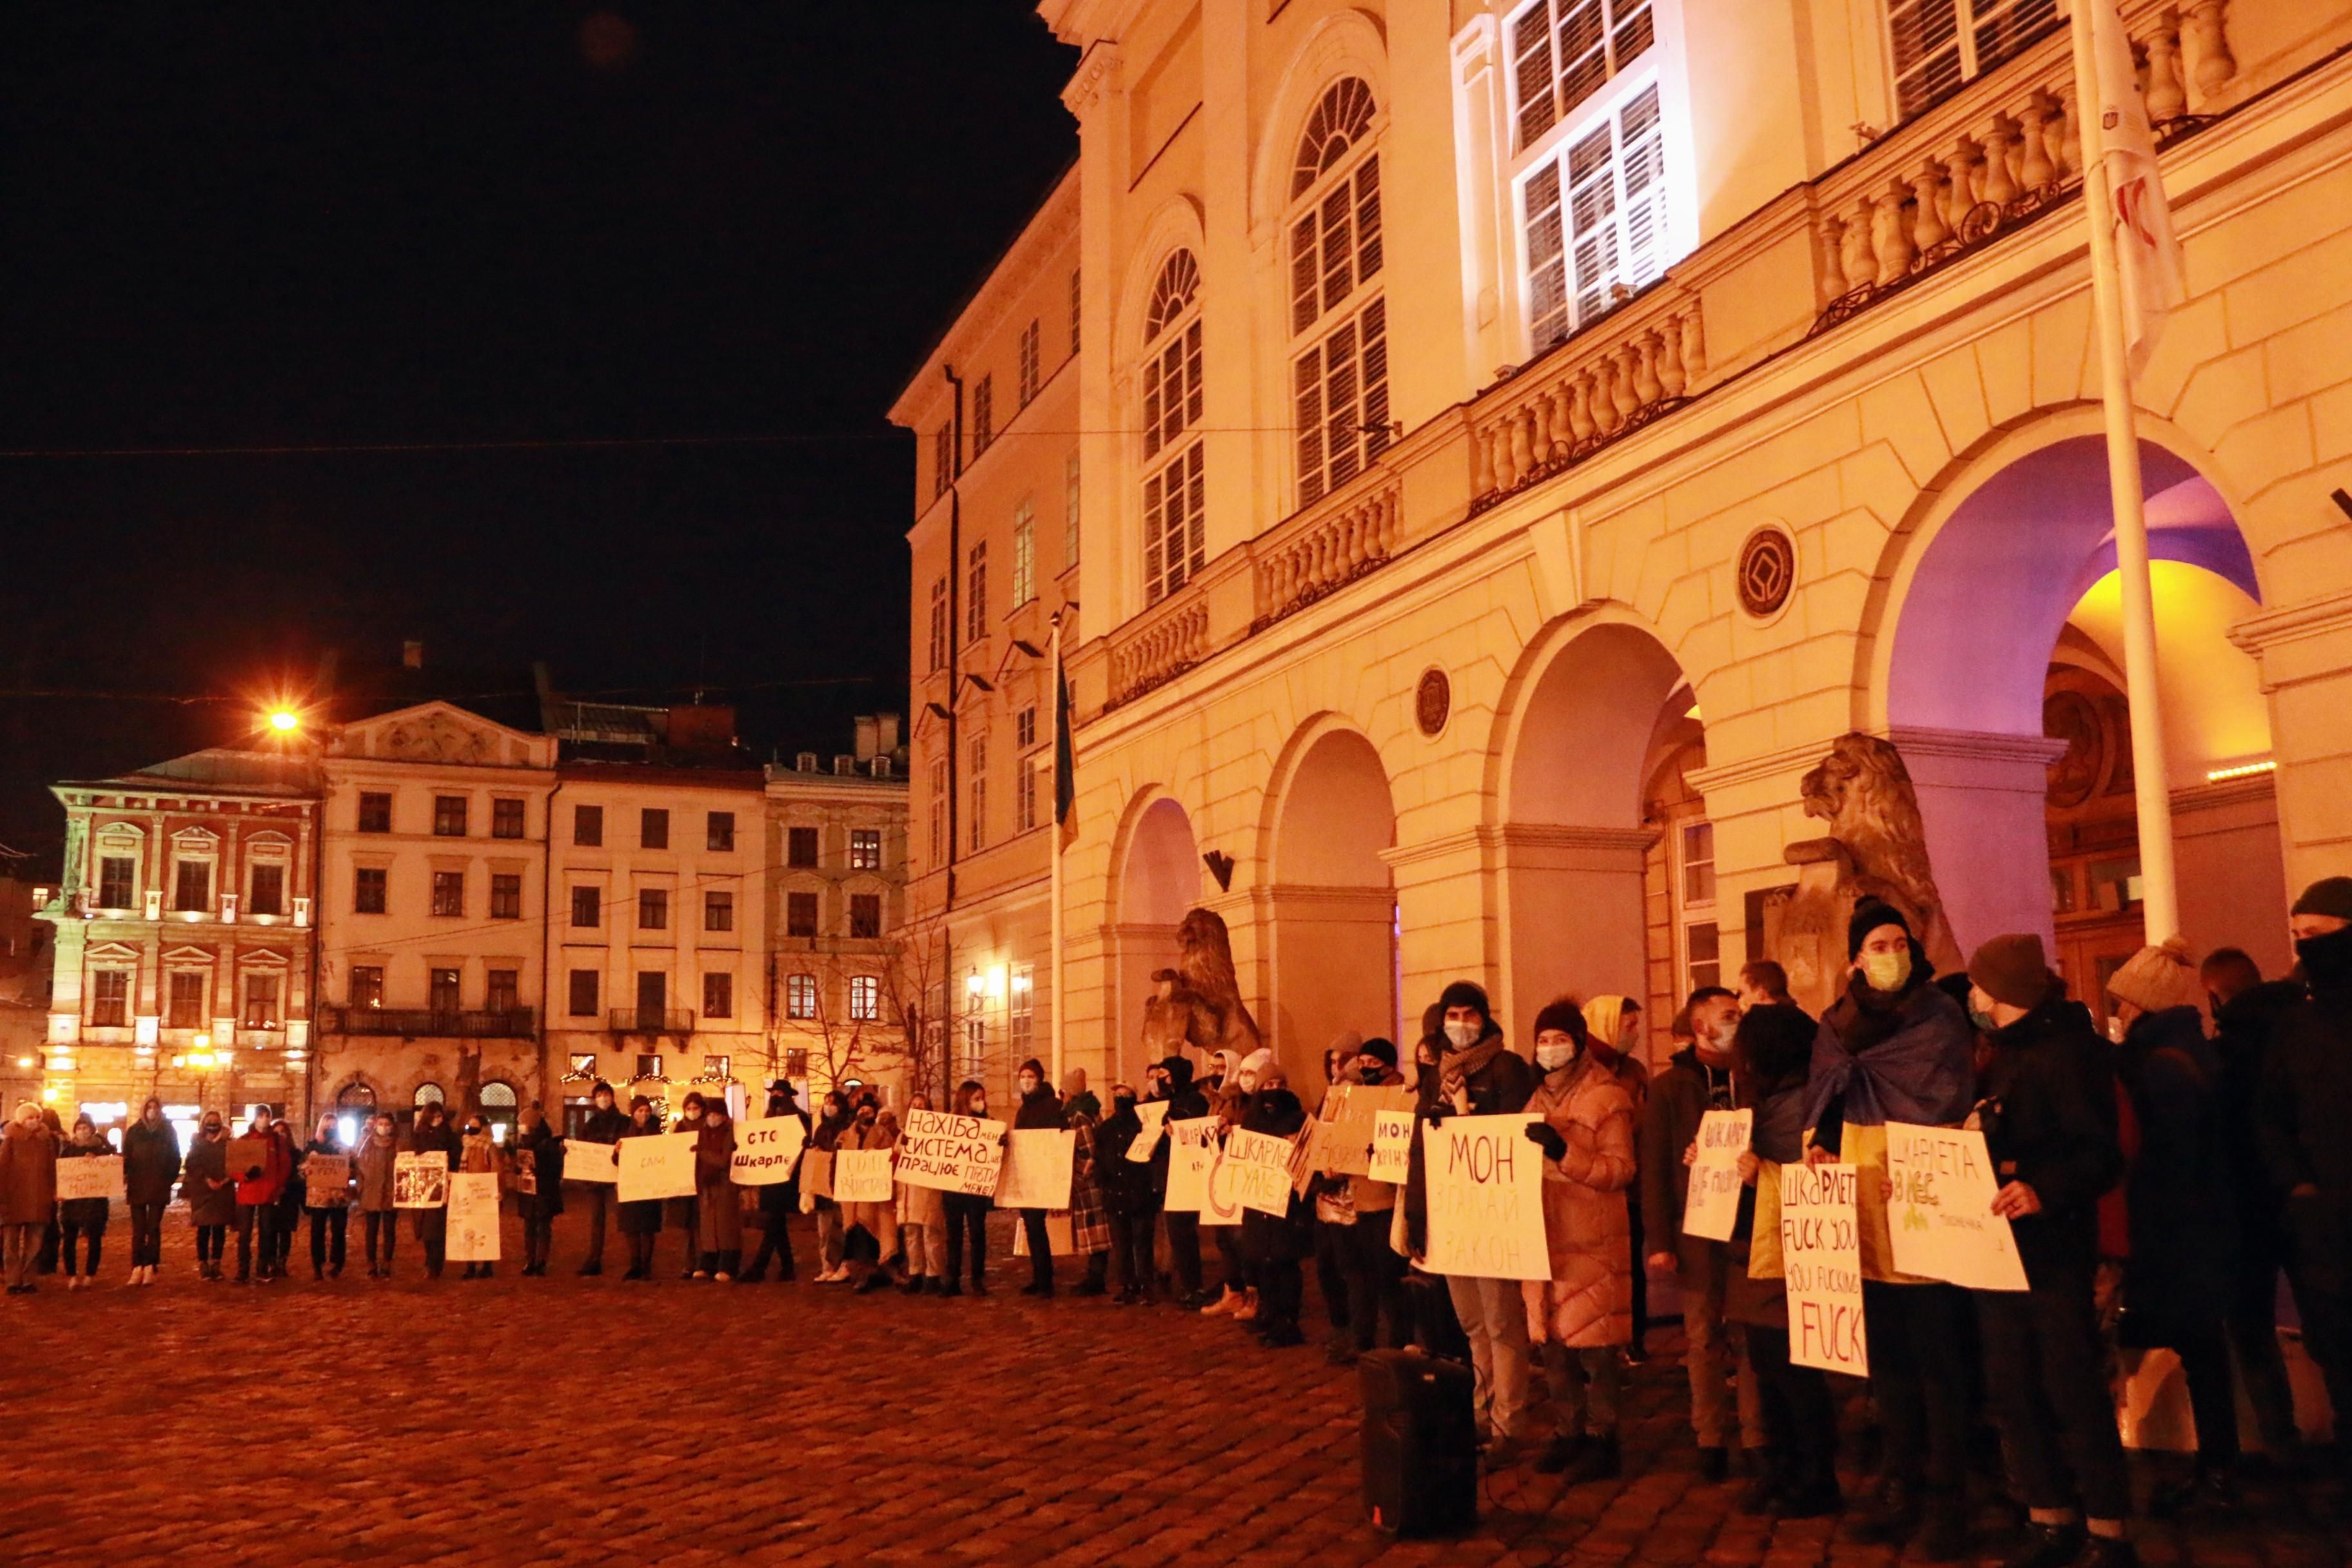 "Исправит Могила": во Львове студенты требовали отставки Шкарлета, – фото, видео акции